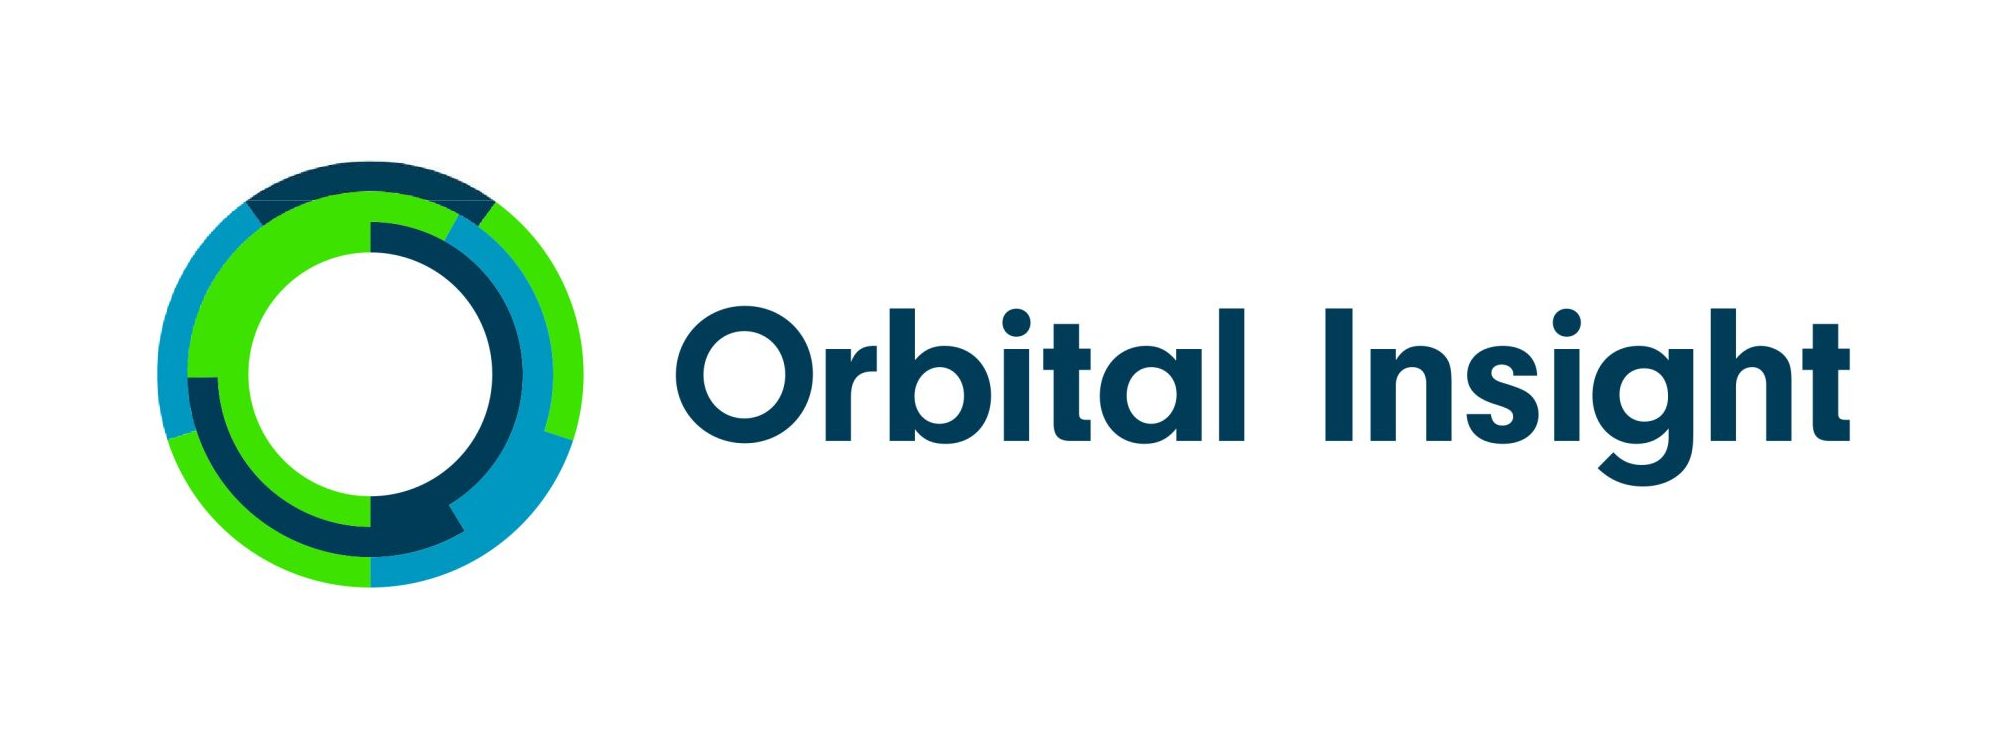 Orbital Insight Inc.